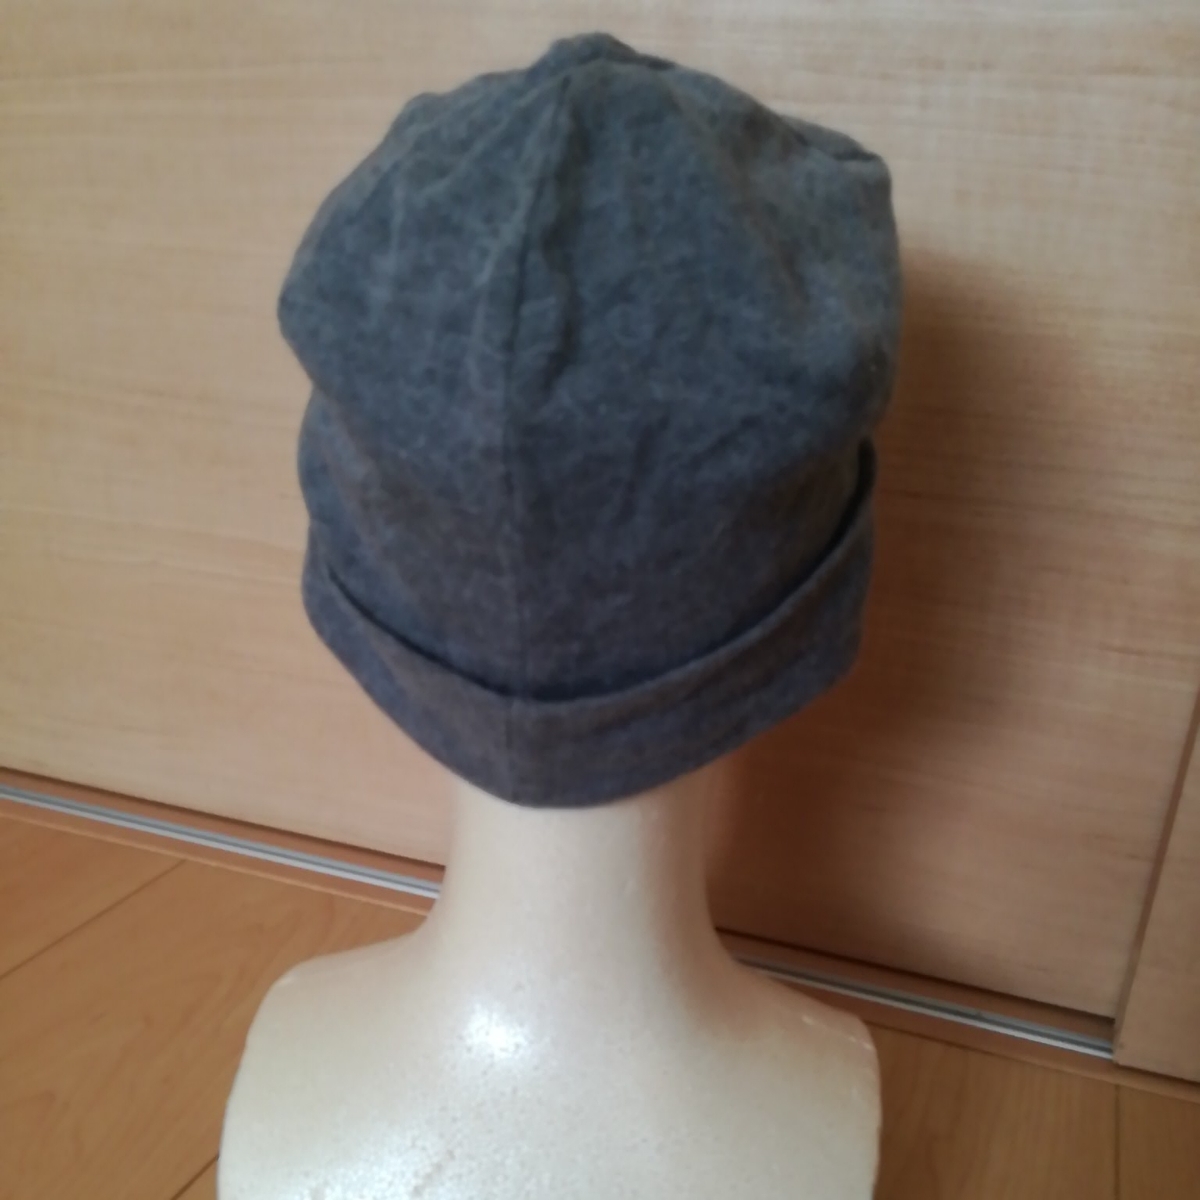 日本製造CAHLA CA4LA全季可穿戴薄透視純棉豆豆針織帽灰色 原文:日本製 カシラCA4LA オールシーズン着用可能 薄手コットン ビーニーニットキャップ 帽子グレー